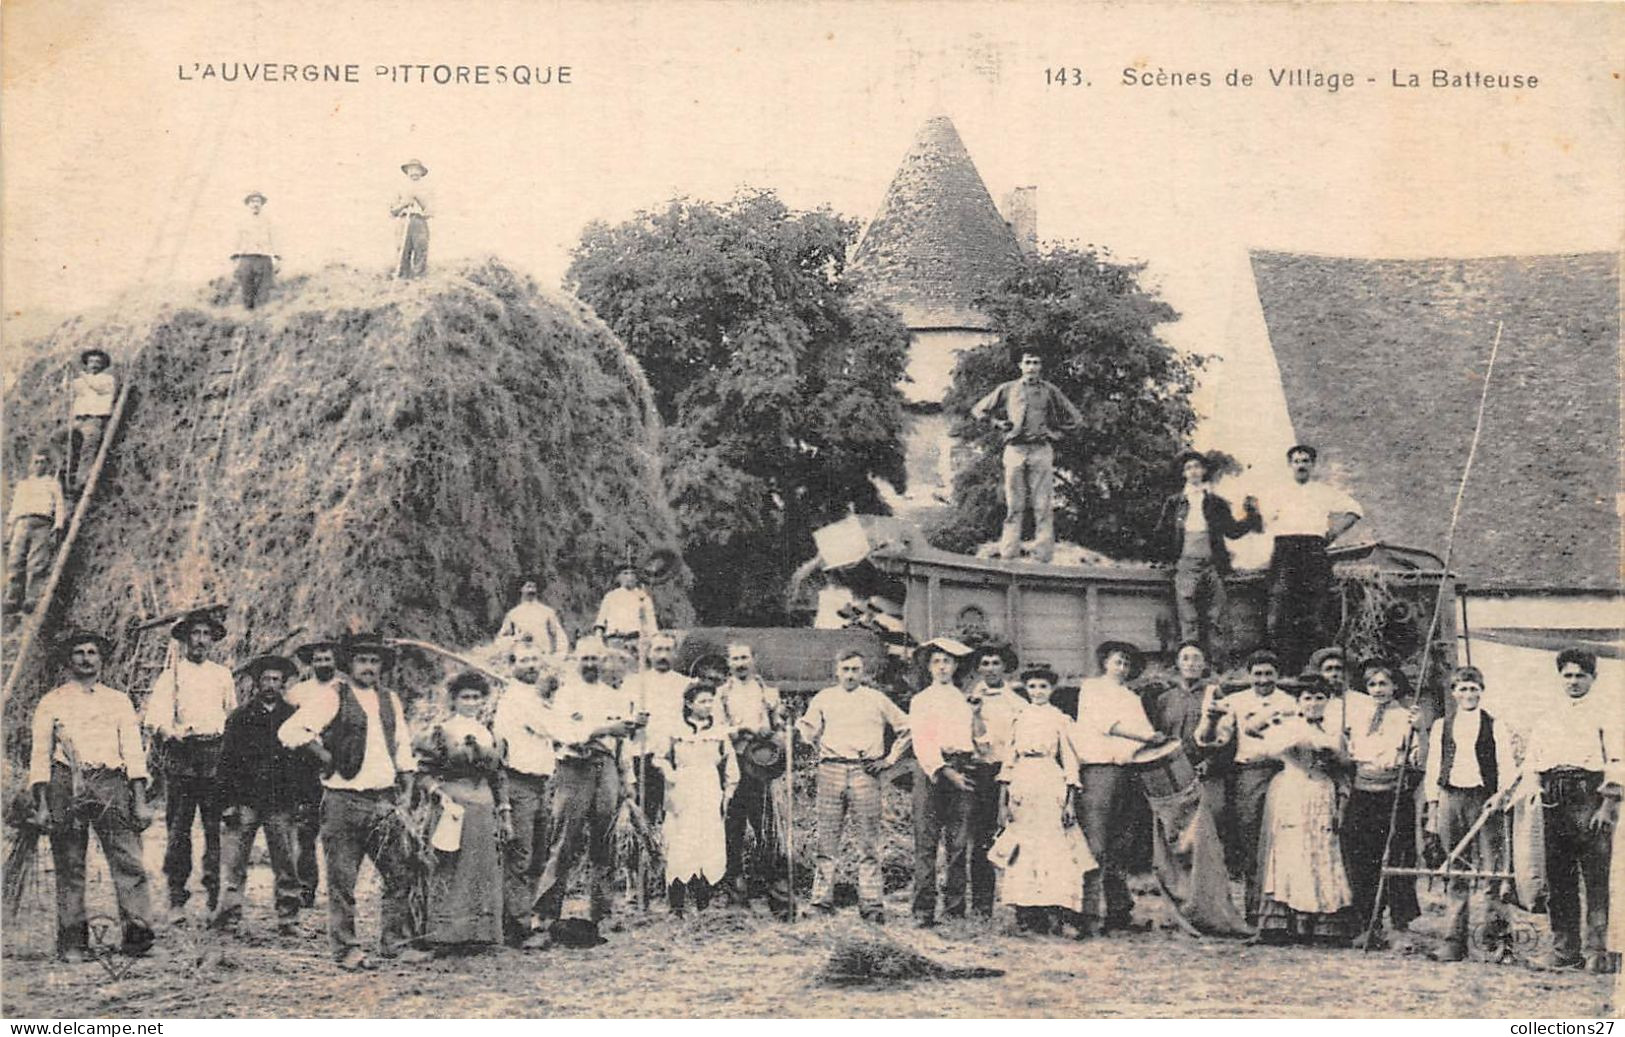 L'AUVERGNE PITTORESQUE- SCENES DE VILLGE - LA BATTEUSE - Auvergne Types D'Auvergne